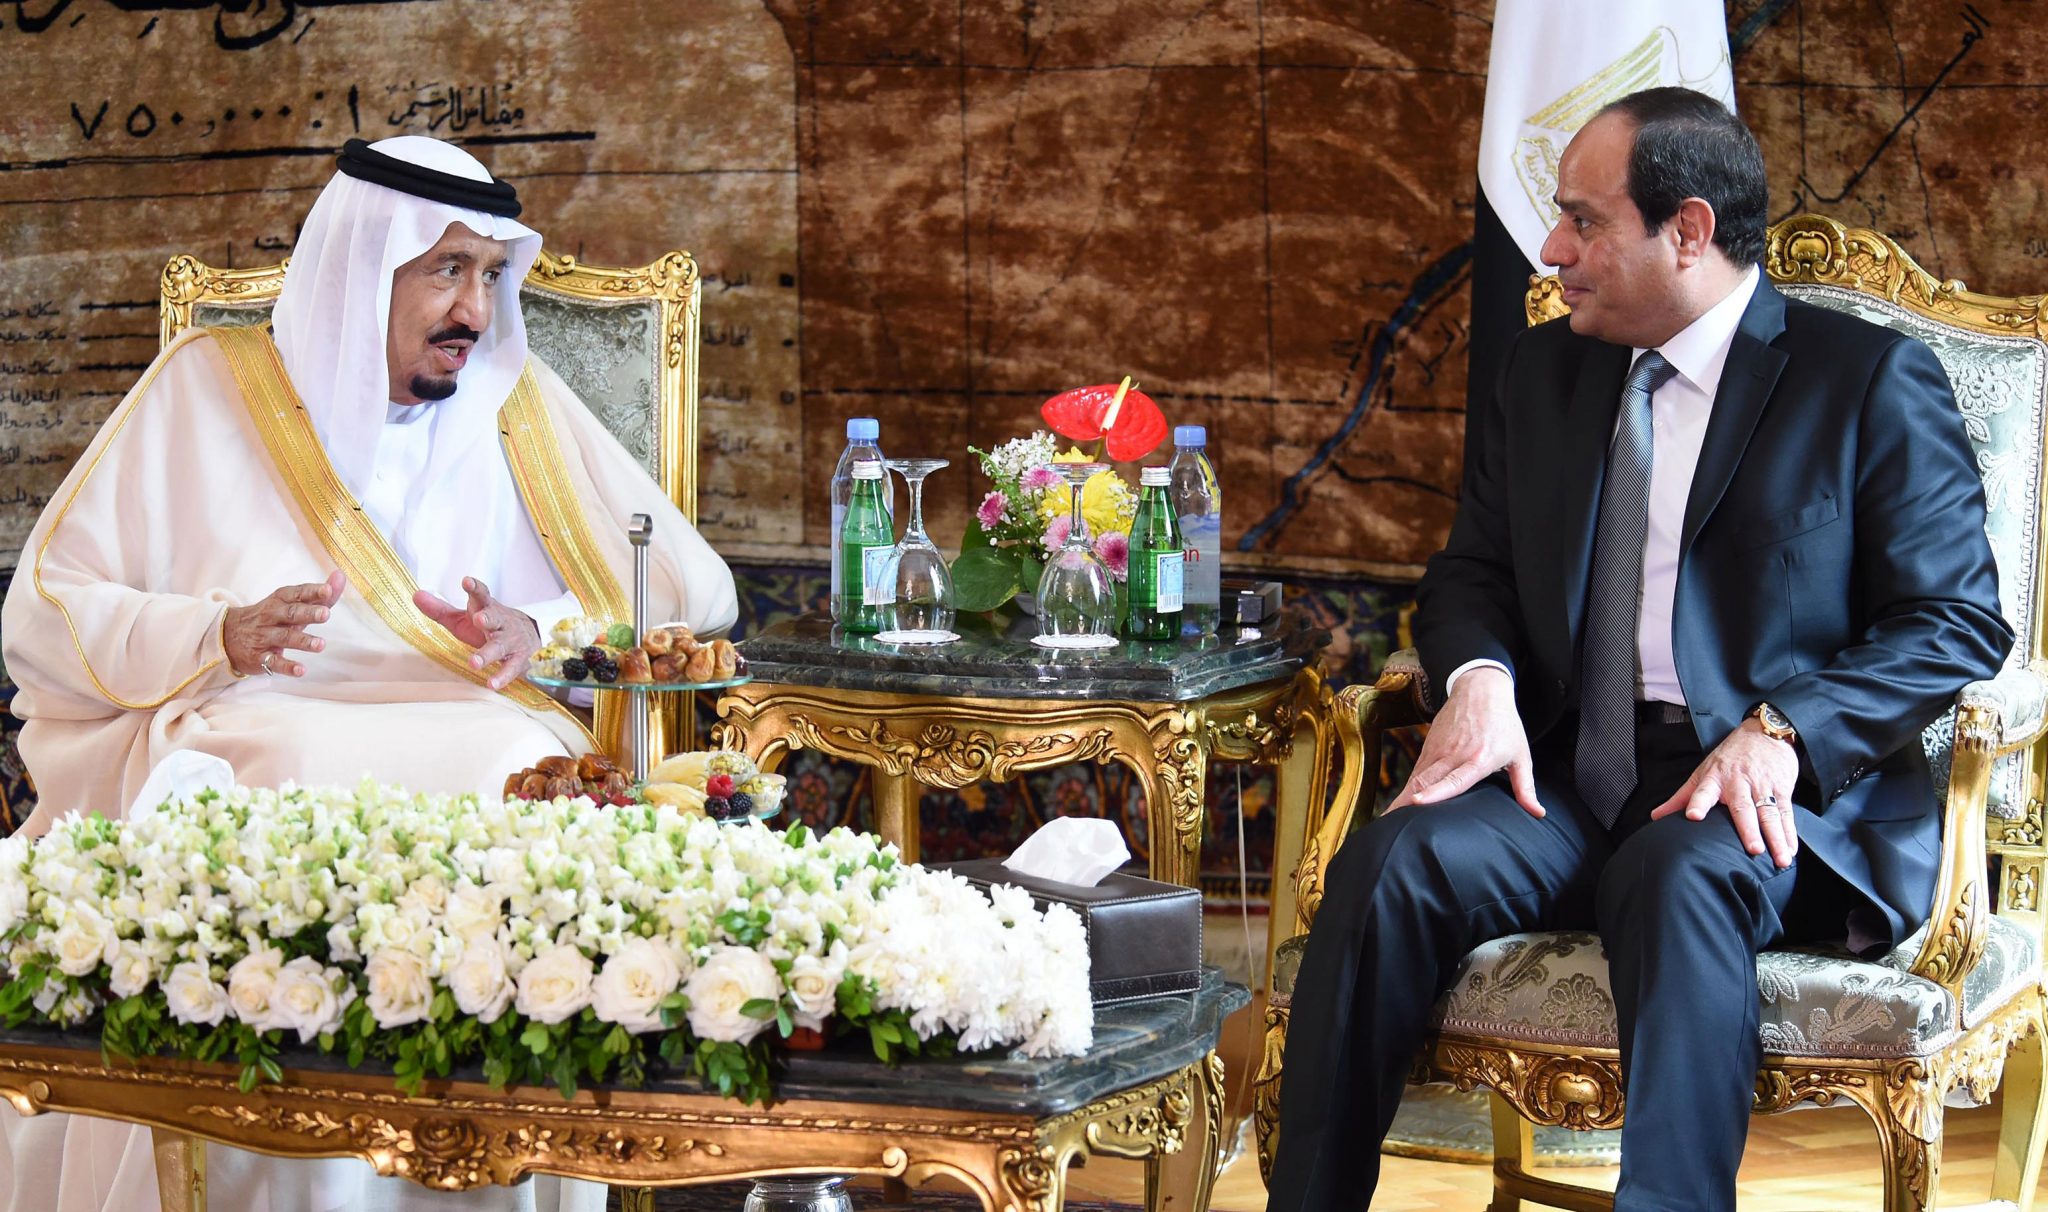   بسام راضى: الرئيس السيسى يعزى الملك سلمان فى وفاة الأمير طلال بن عبد العزيز